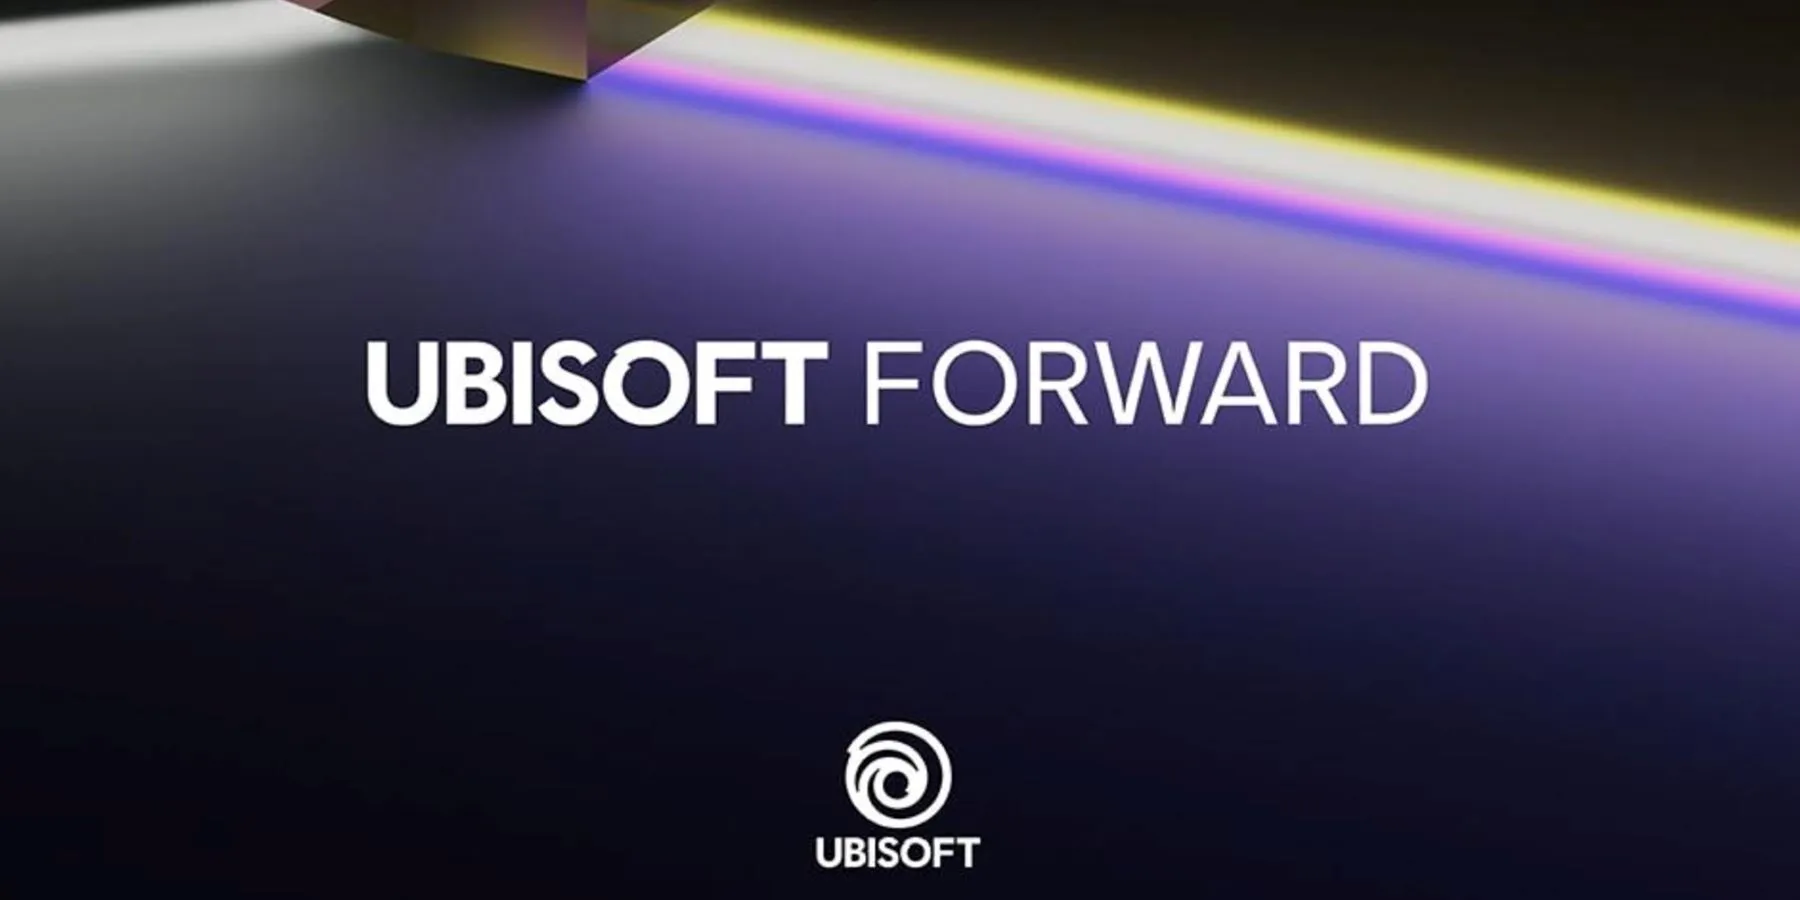 هر آنچه در مراسم Ubisoft Forward رخ داد